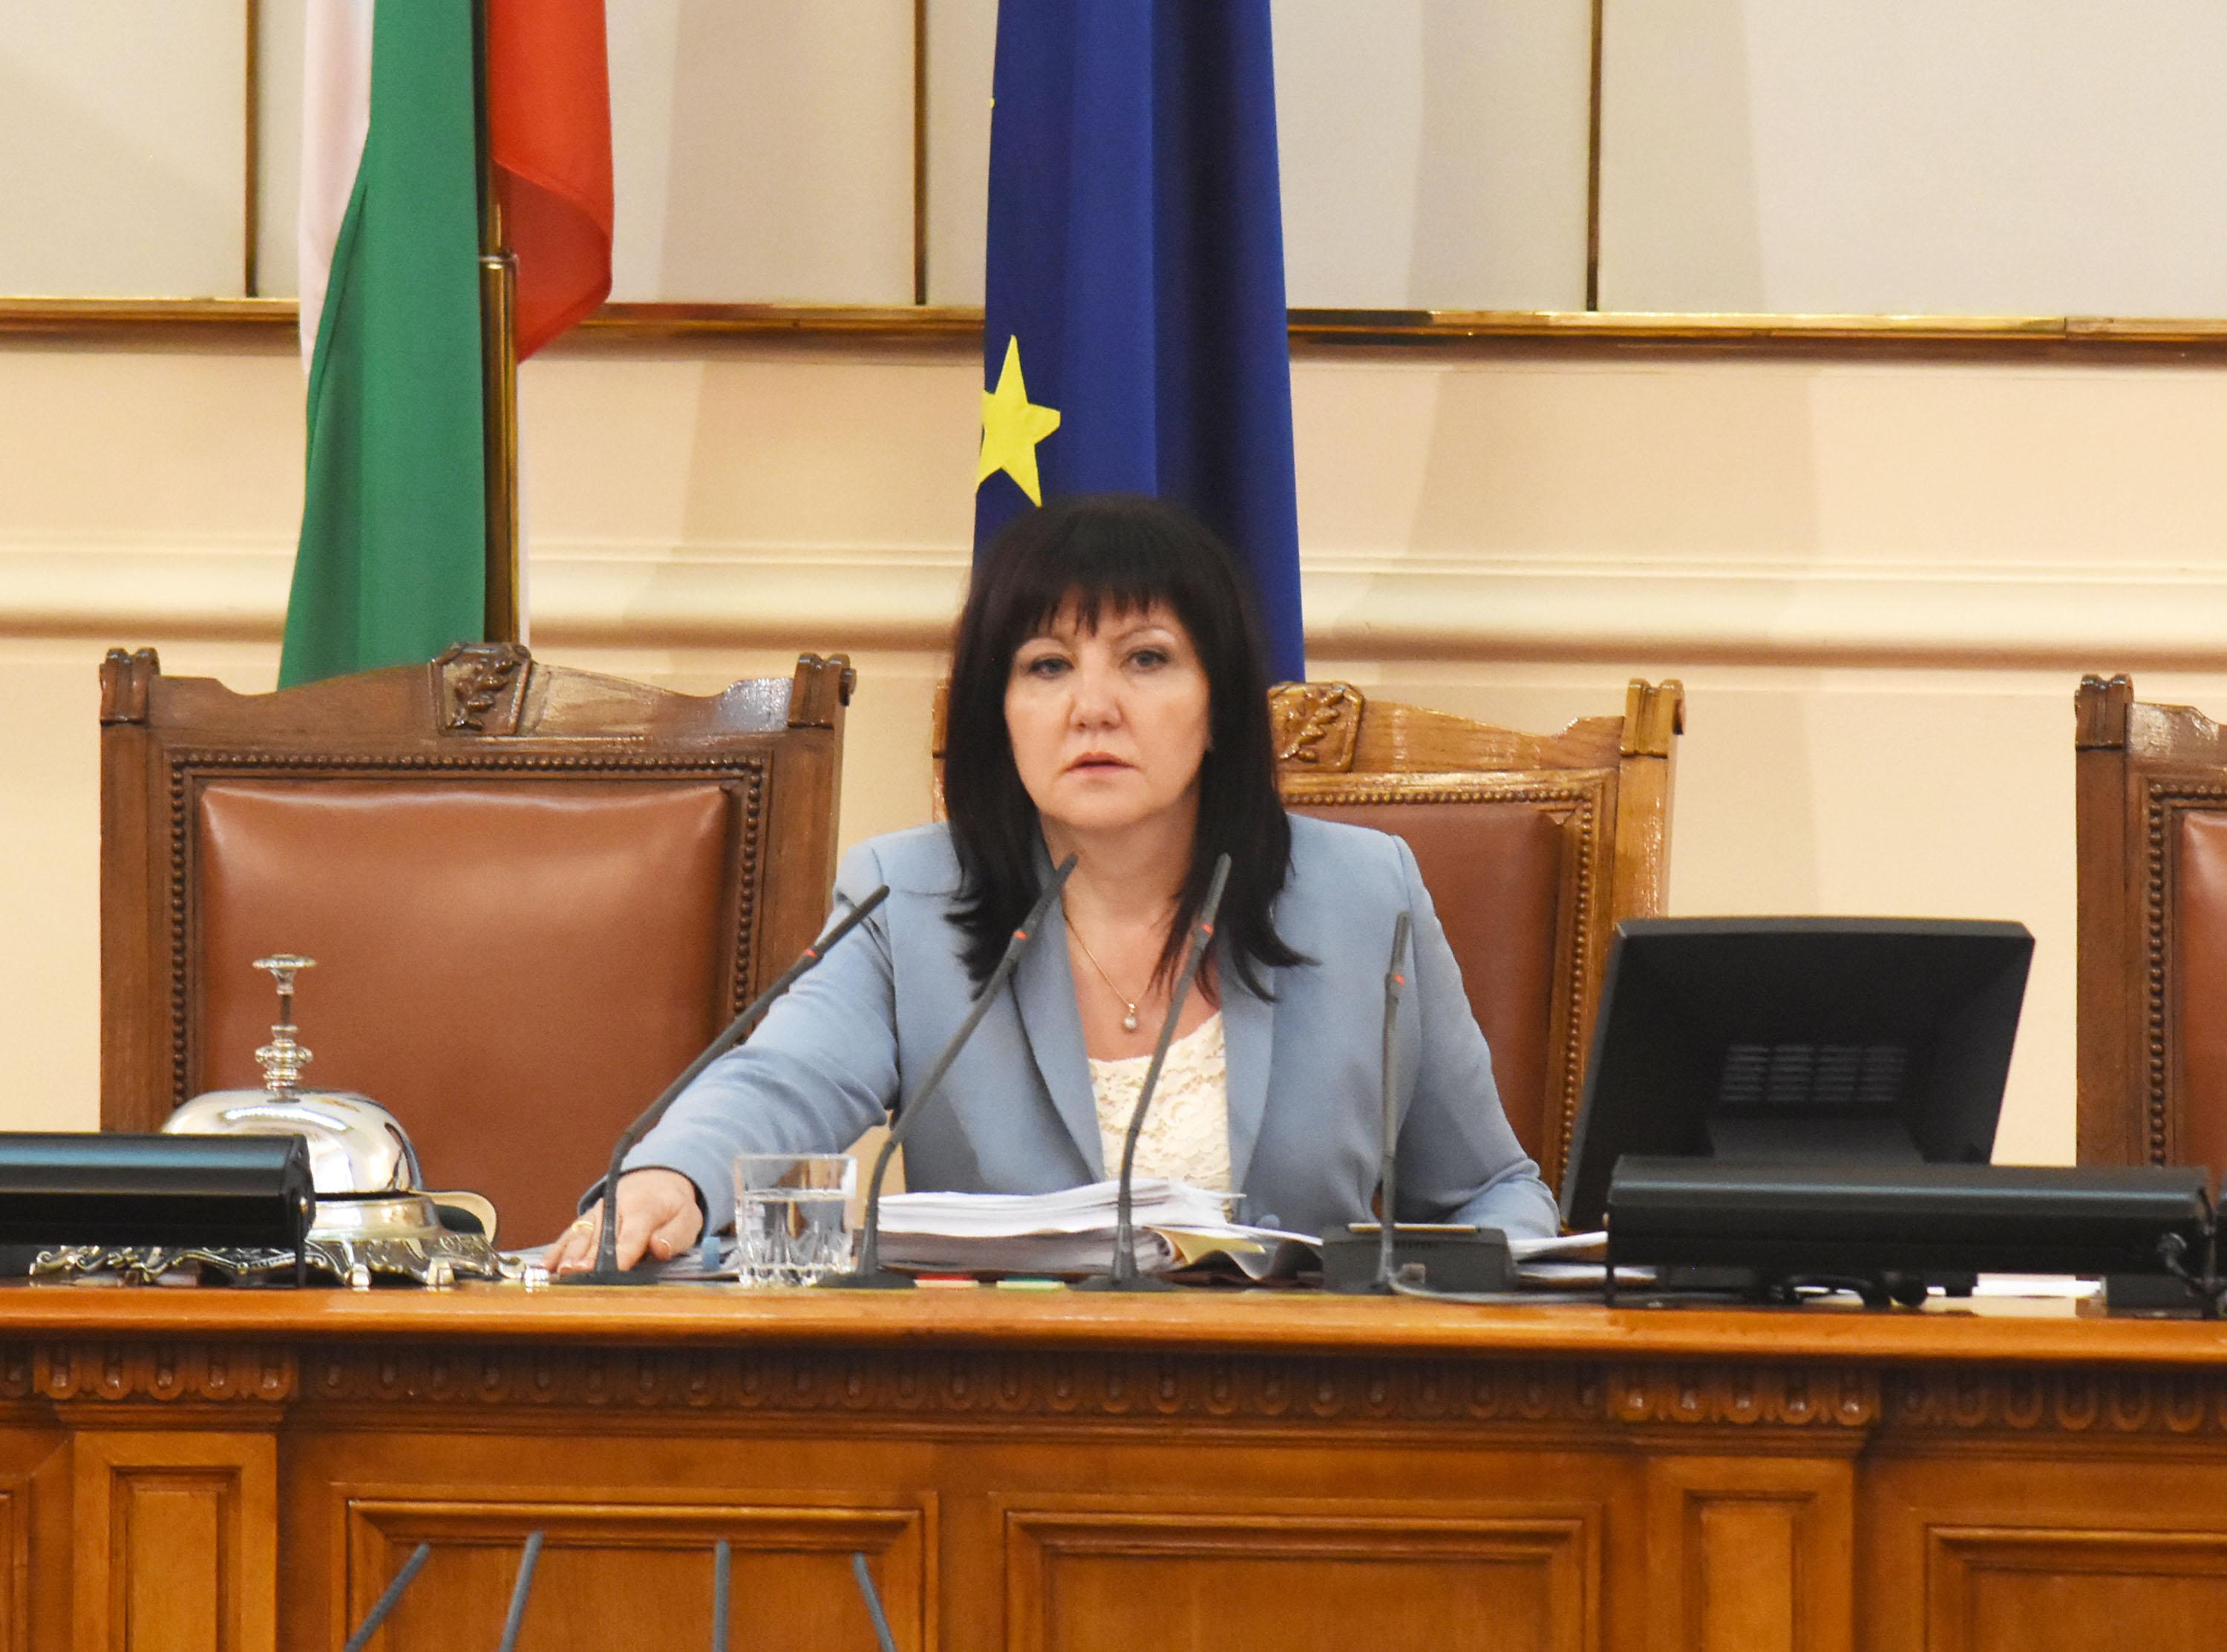 Цвета Караянчева от ГЕРБ беше избрана за председател на парламента